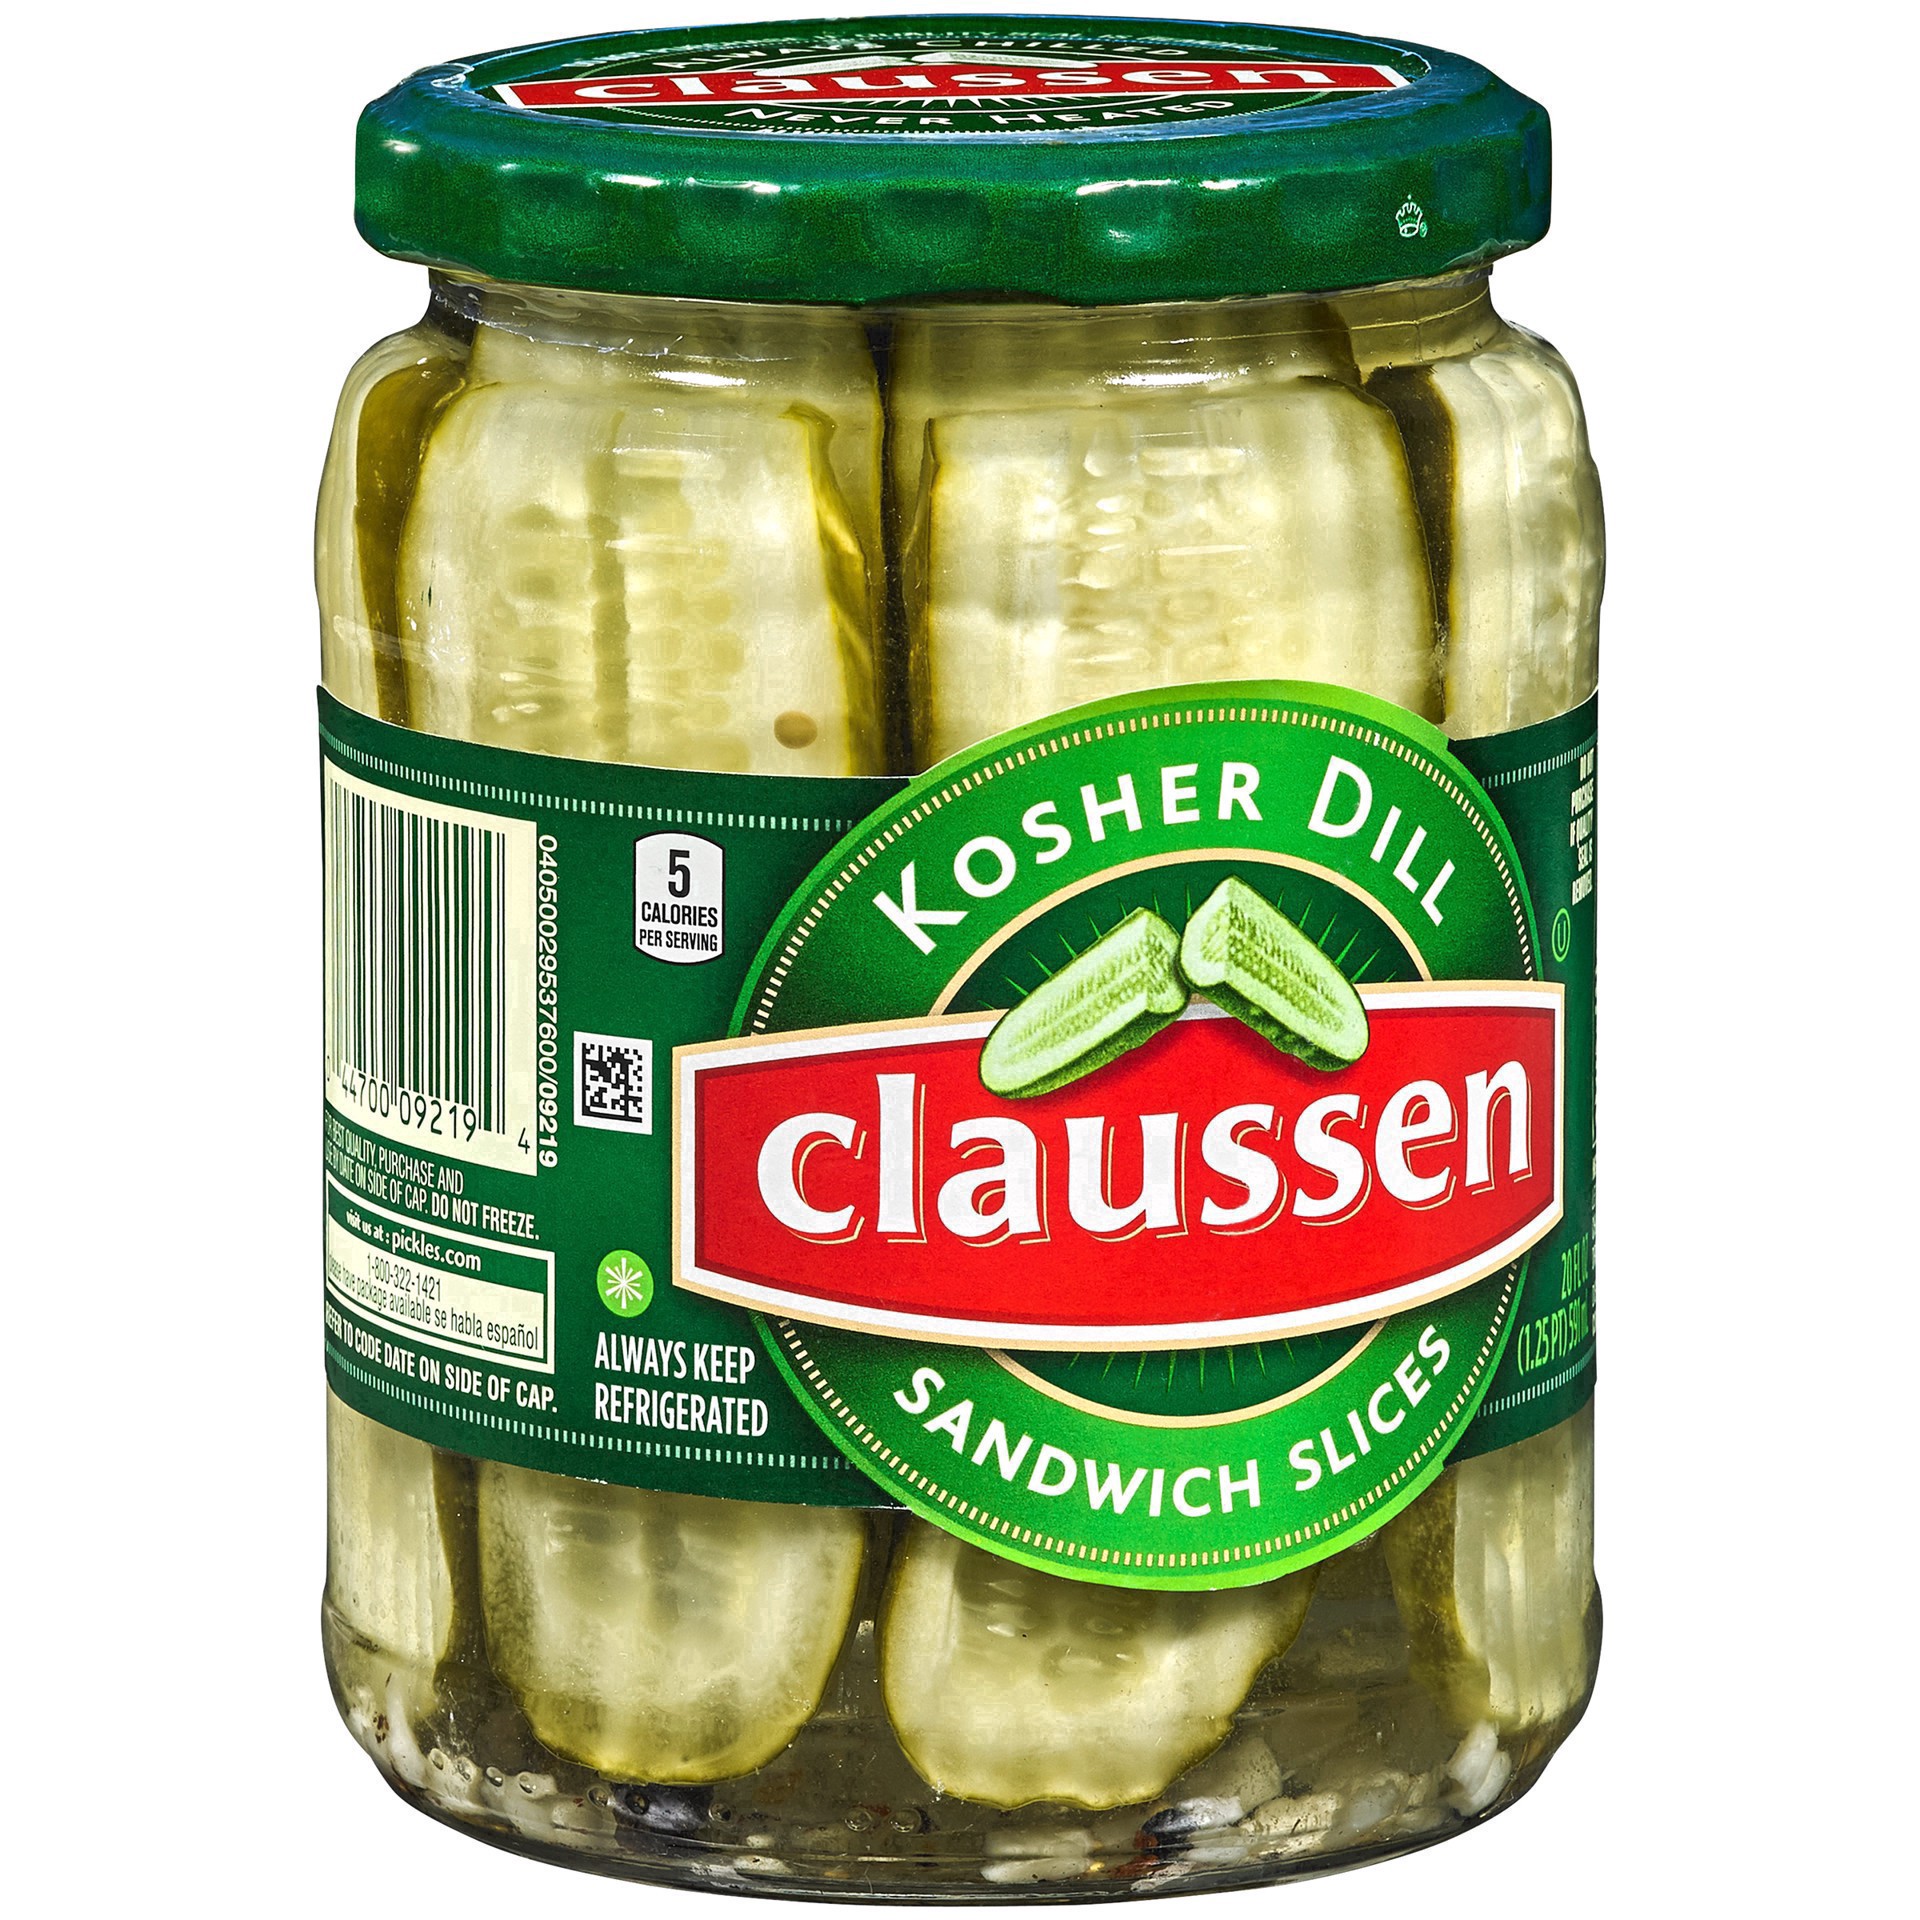 slide 124 of 144, Claussen Kosher Dill Pickle Sandwich Slices, 20 fl. oz. Jar, 20 fl oz